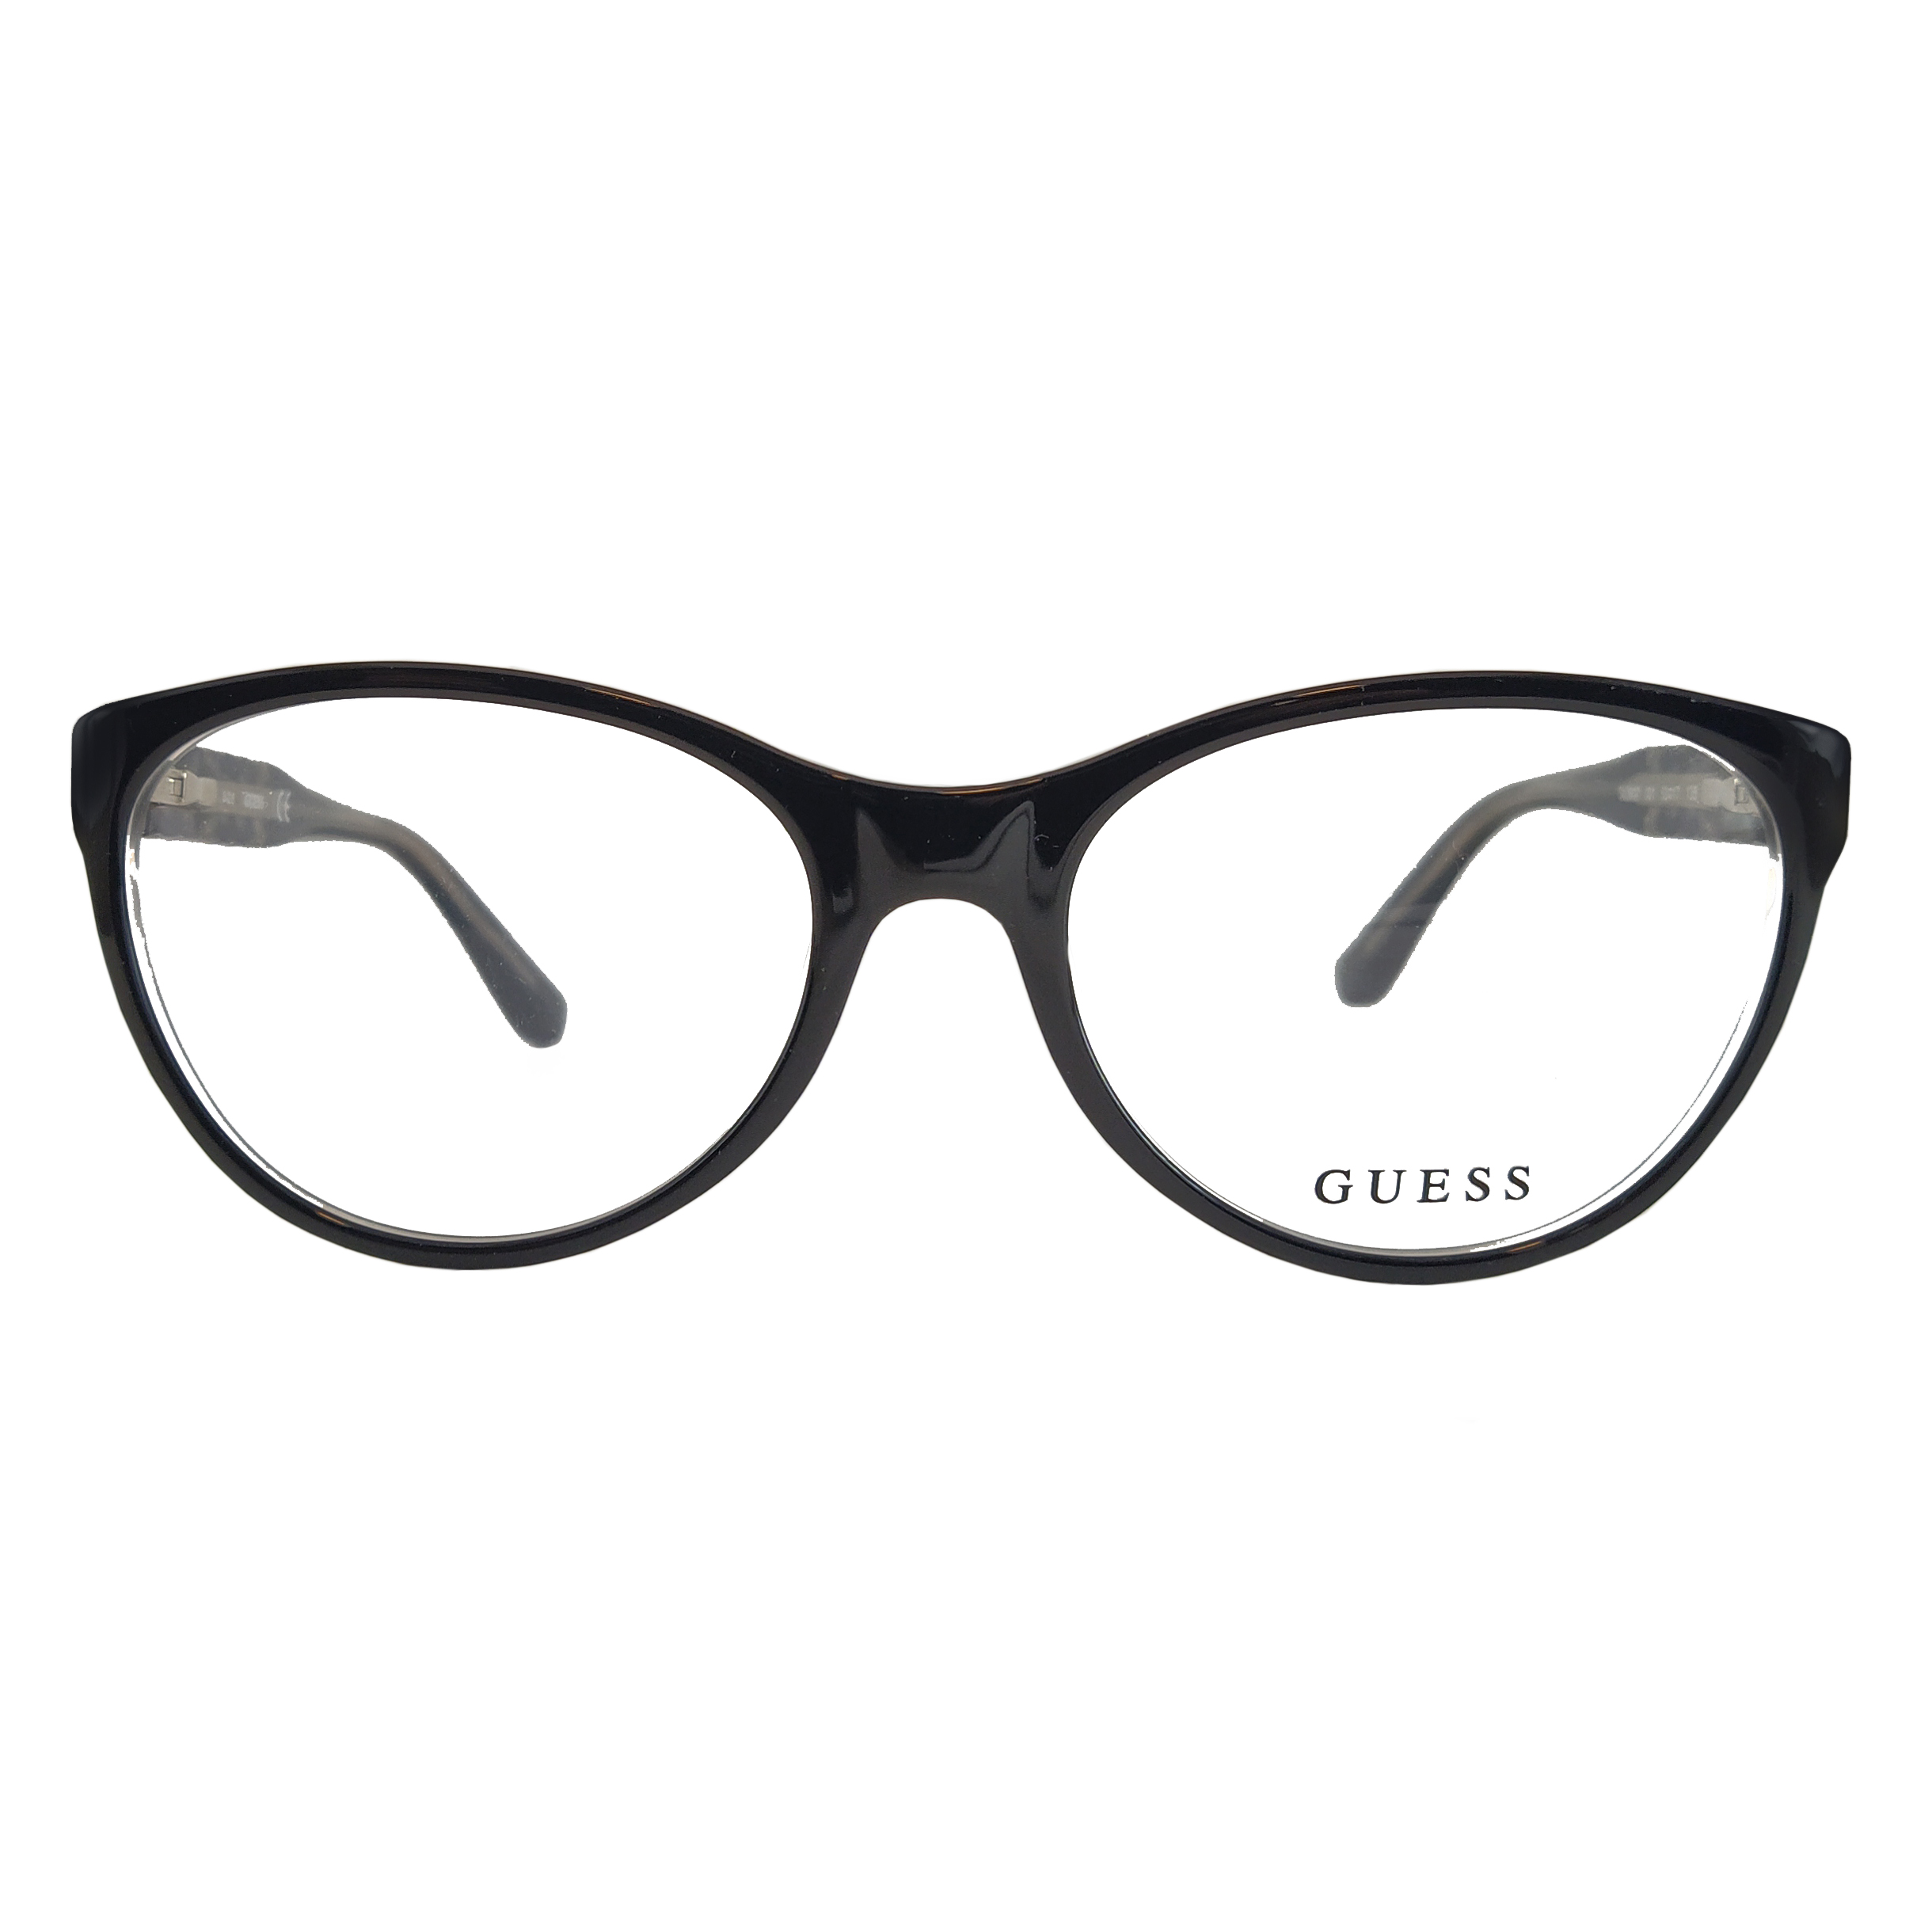 فریم عینک طبی زنانه گس مدل GU260700153 -  - 4